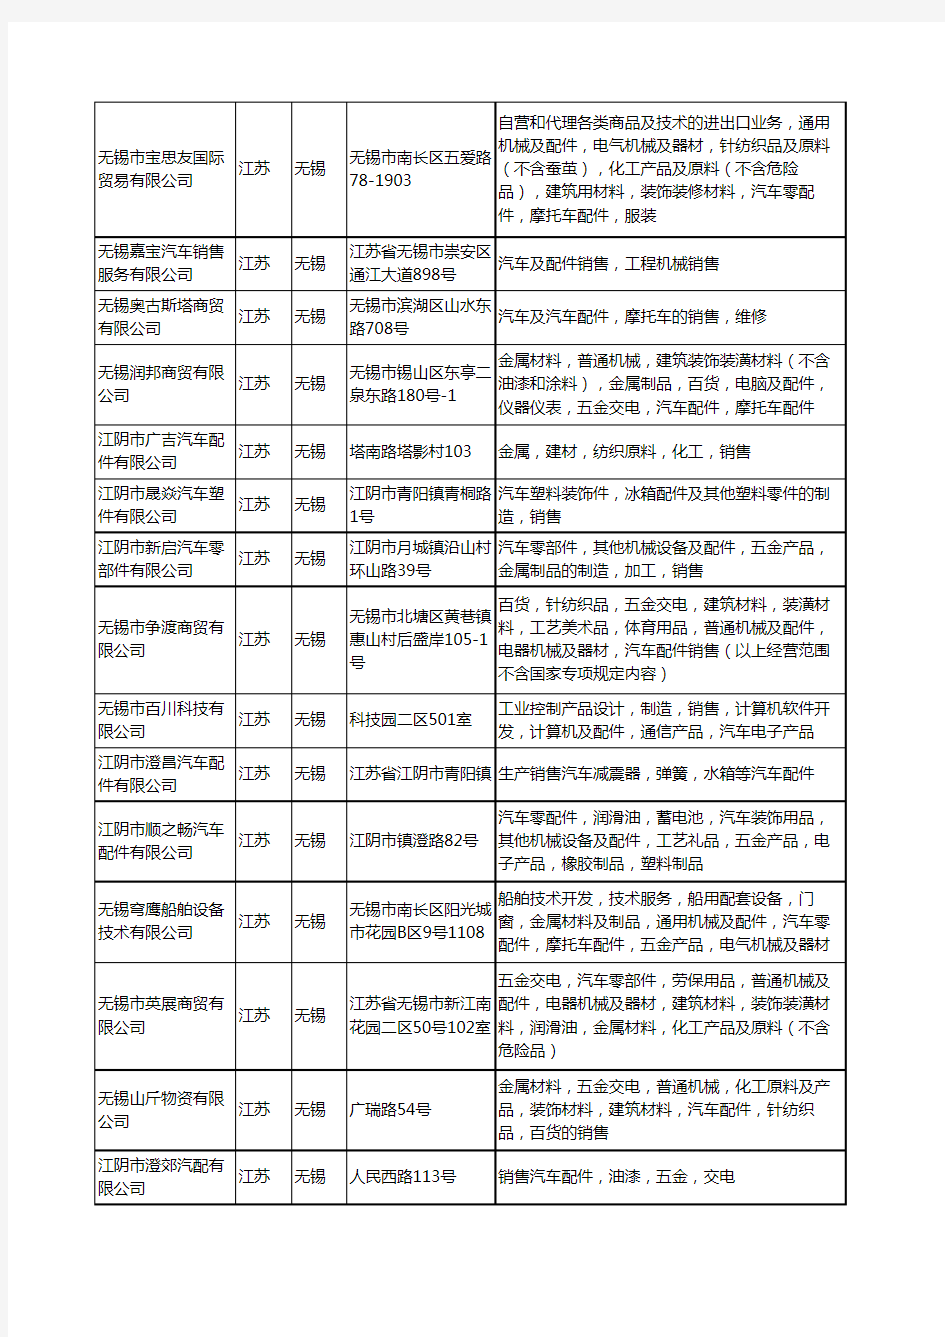 新版江苏省无锡汽车配件销售工商企业公司商家名录名单联系方式大全404家